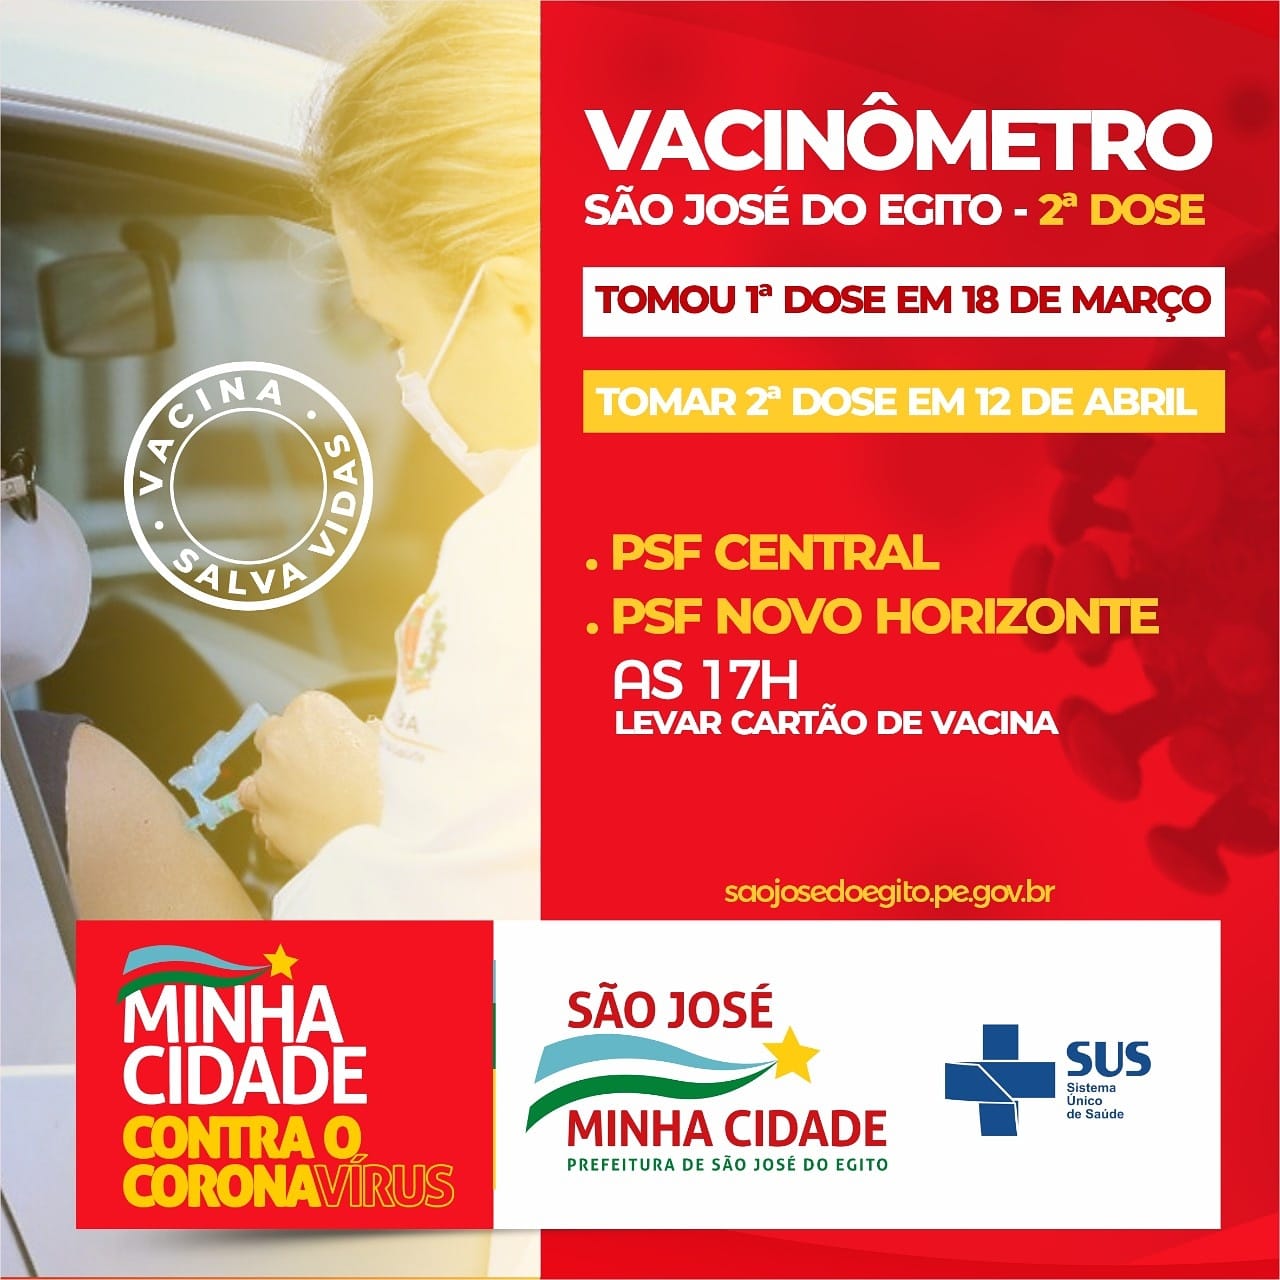 You are currently viewing São José do Egito convoca para 2ª dose da vacina contra covid-19